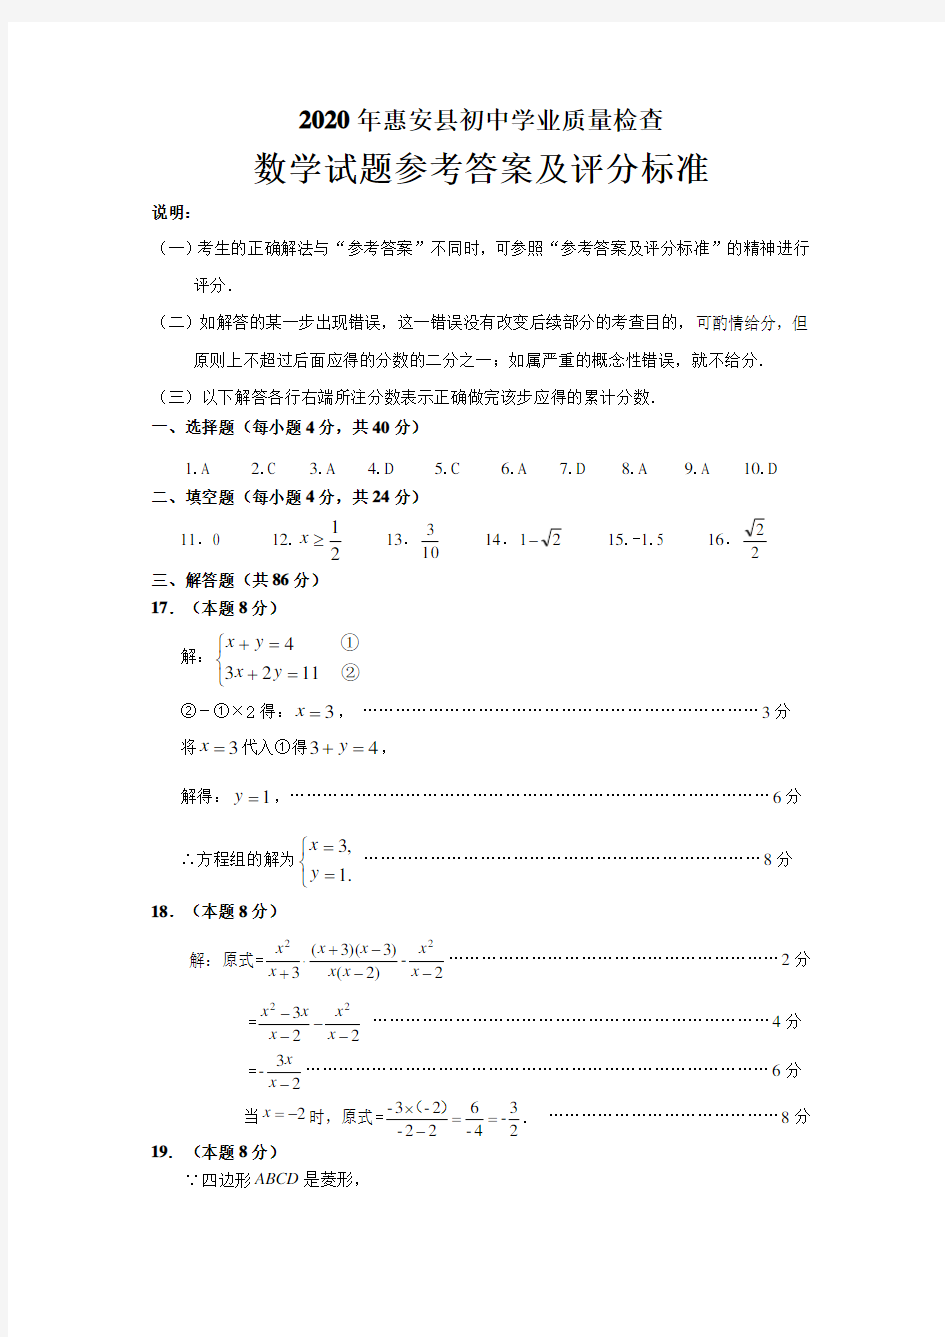 2020年惠安县初中学业质量检查数学参考答案及评分标准